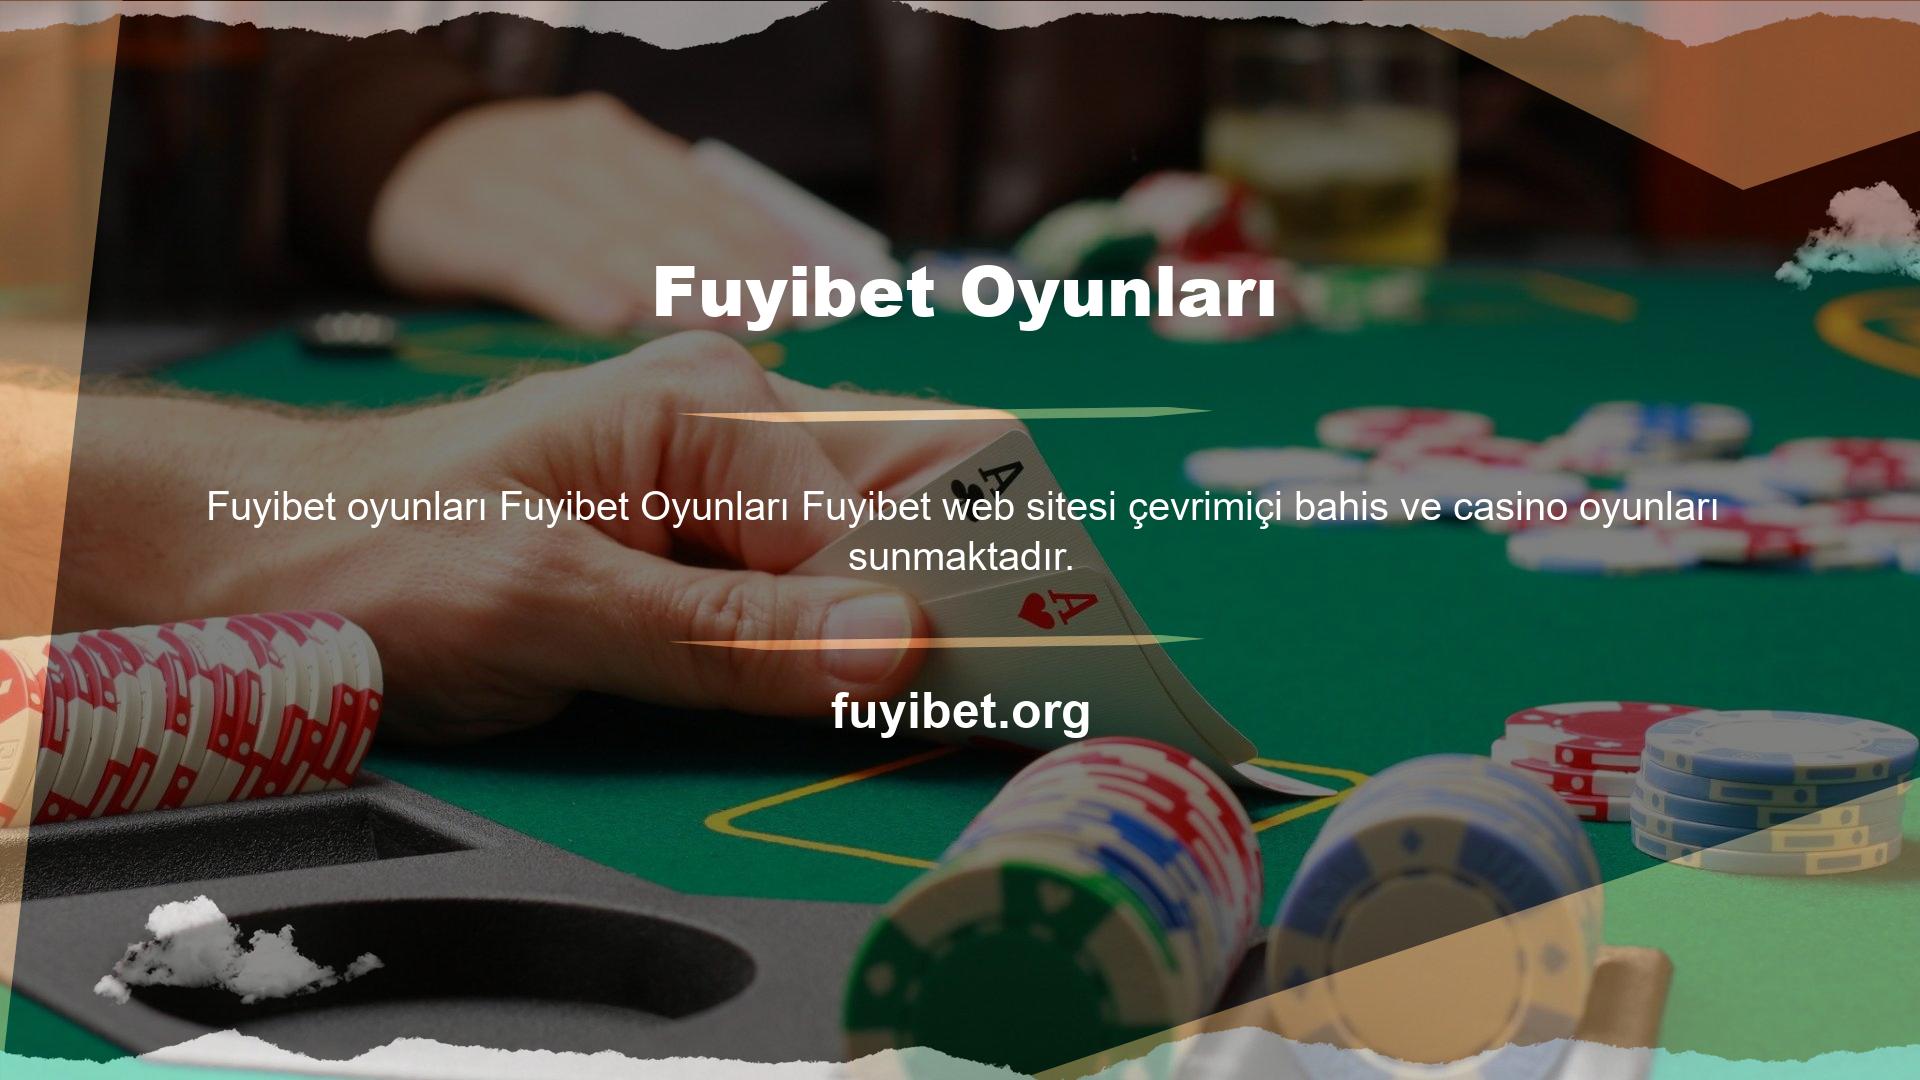 Fuyibet Bahis Oyunları, kullanıcılarına çok çeşitli oyunlar sunmaktadır